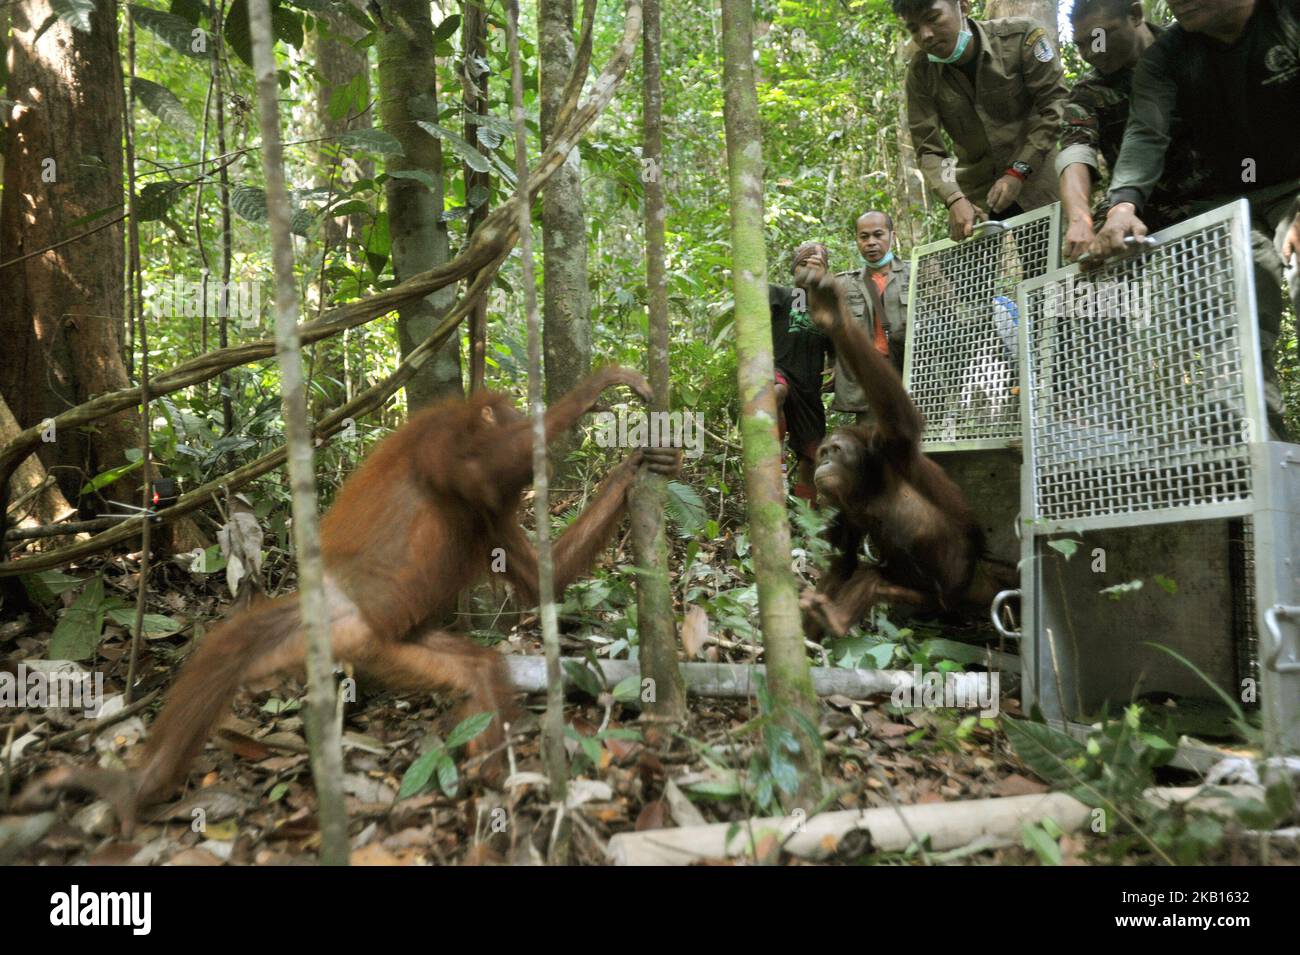 KALIMANTAN OCCIDENTALE, INDONESIA, SETTEMBRE - 17 : gli Orangutani escono sugli alberi e salgono fino in cima al rilascio di Orangutan nella foresta di Bukit Baka Bukit Raya Parco Nazionale, nel Kalimantan Occidentale, il 14 Settembre 2018. IAR (International Animal Rescue) insieme con BKSDA (Agenzia indonesiana per la conservazione della natura) Sezione di conservazione di Ketapang 1 Area e Bukit Baka Bukit Raya National Park release 4 conservazione Orangutani su diversi percorsi. I quattro orangutani liberati sono stati vittime del commercio illegale di nome Ongki e illegalmente gestiti da residenti di nome Rambo, Kepo, Ami, il loro orangu adolescente Foto Stock